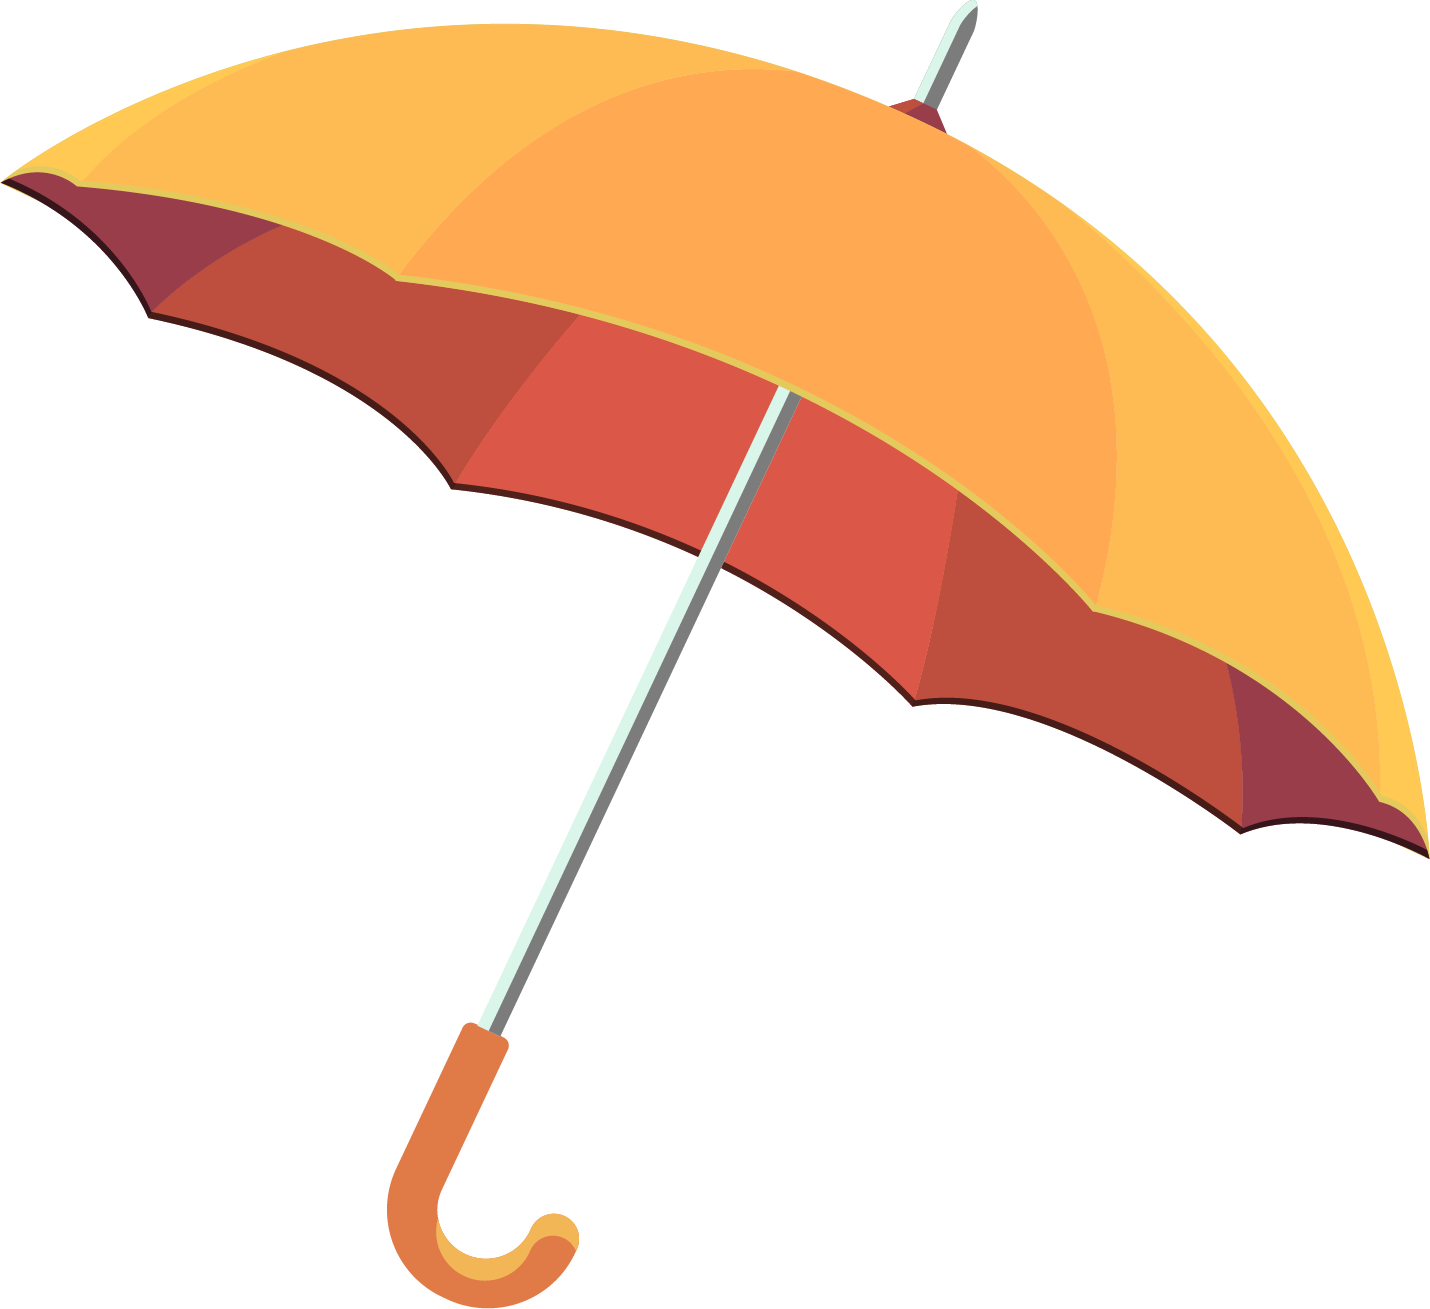 Umbrella Clip Art - Rain Umbrella Vector Free Download (1430x1309)